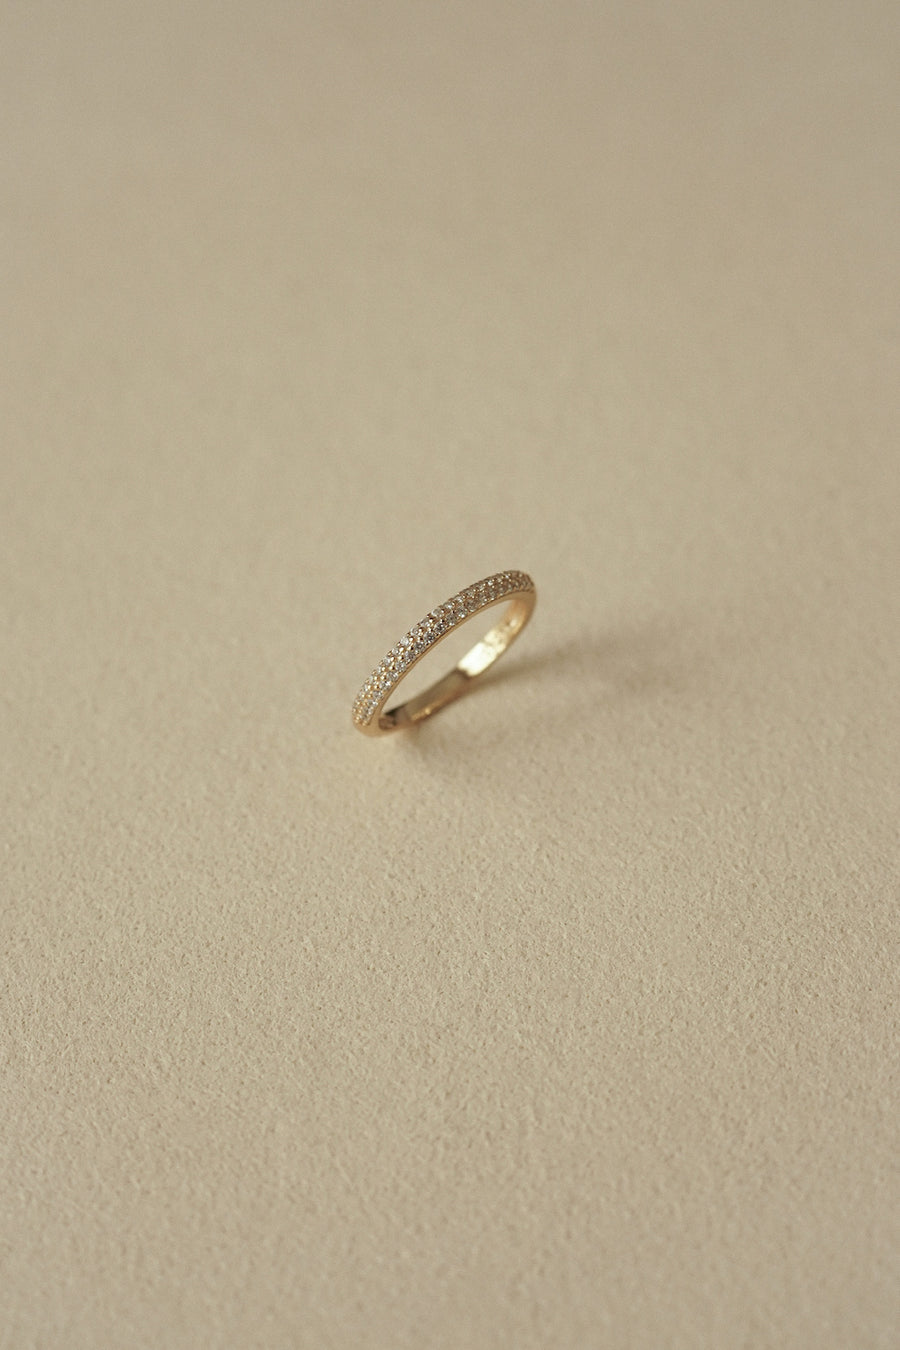 Scarlett Diamond Ring